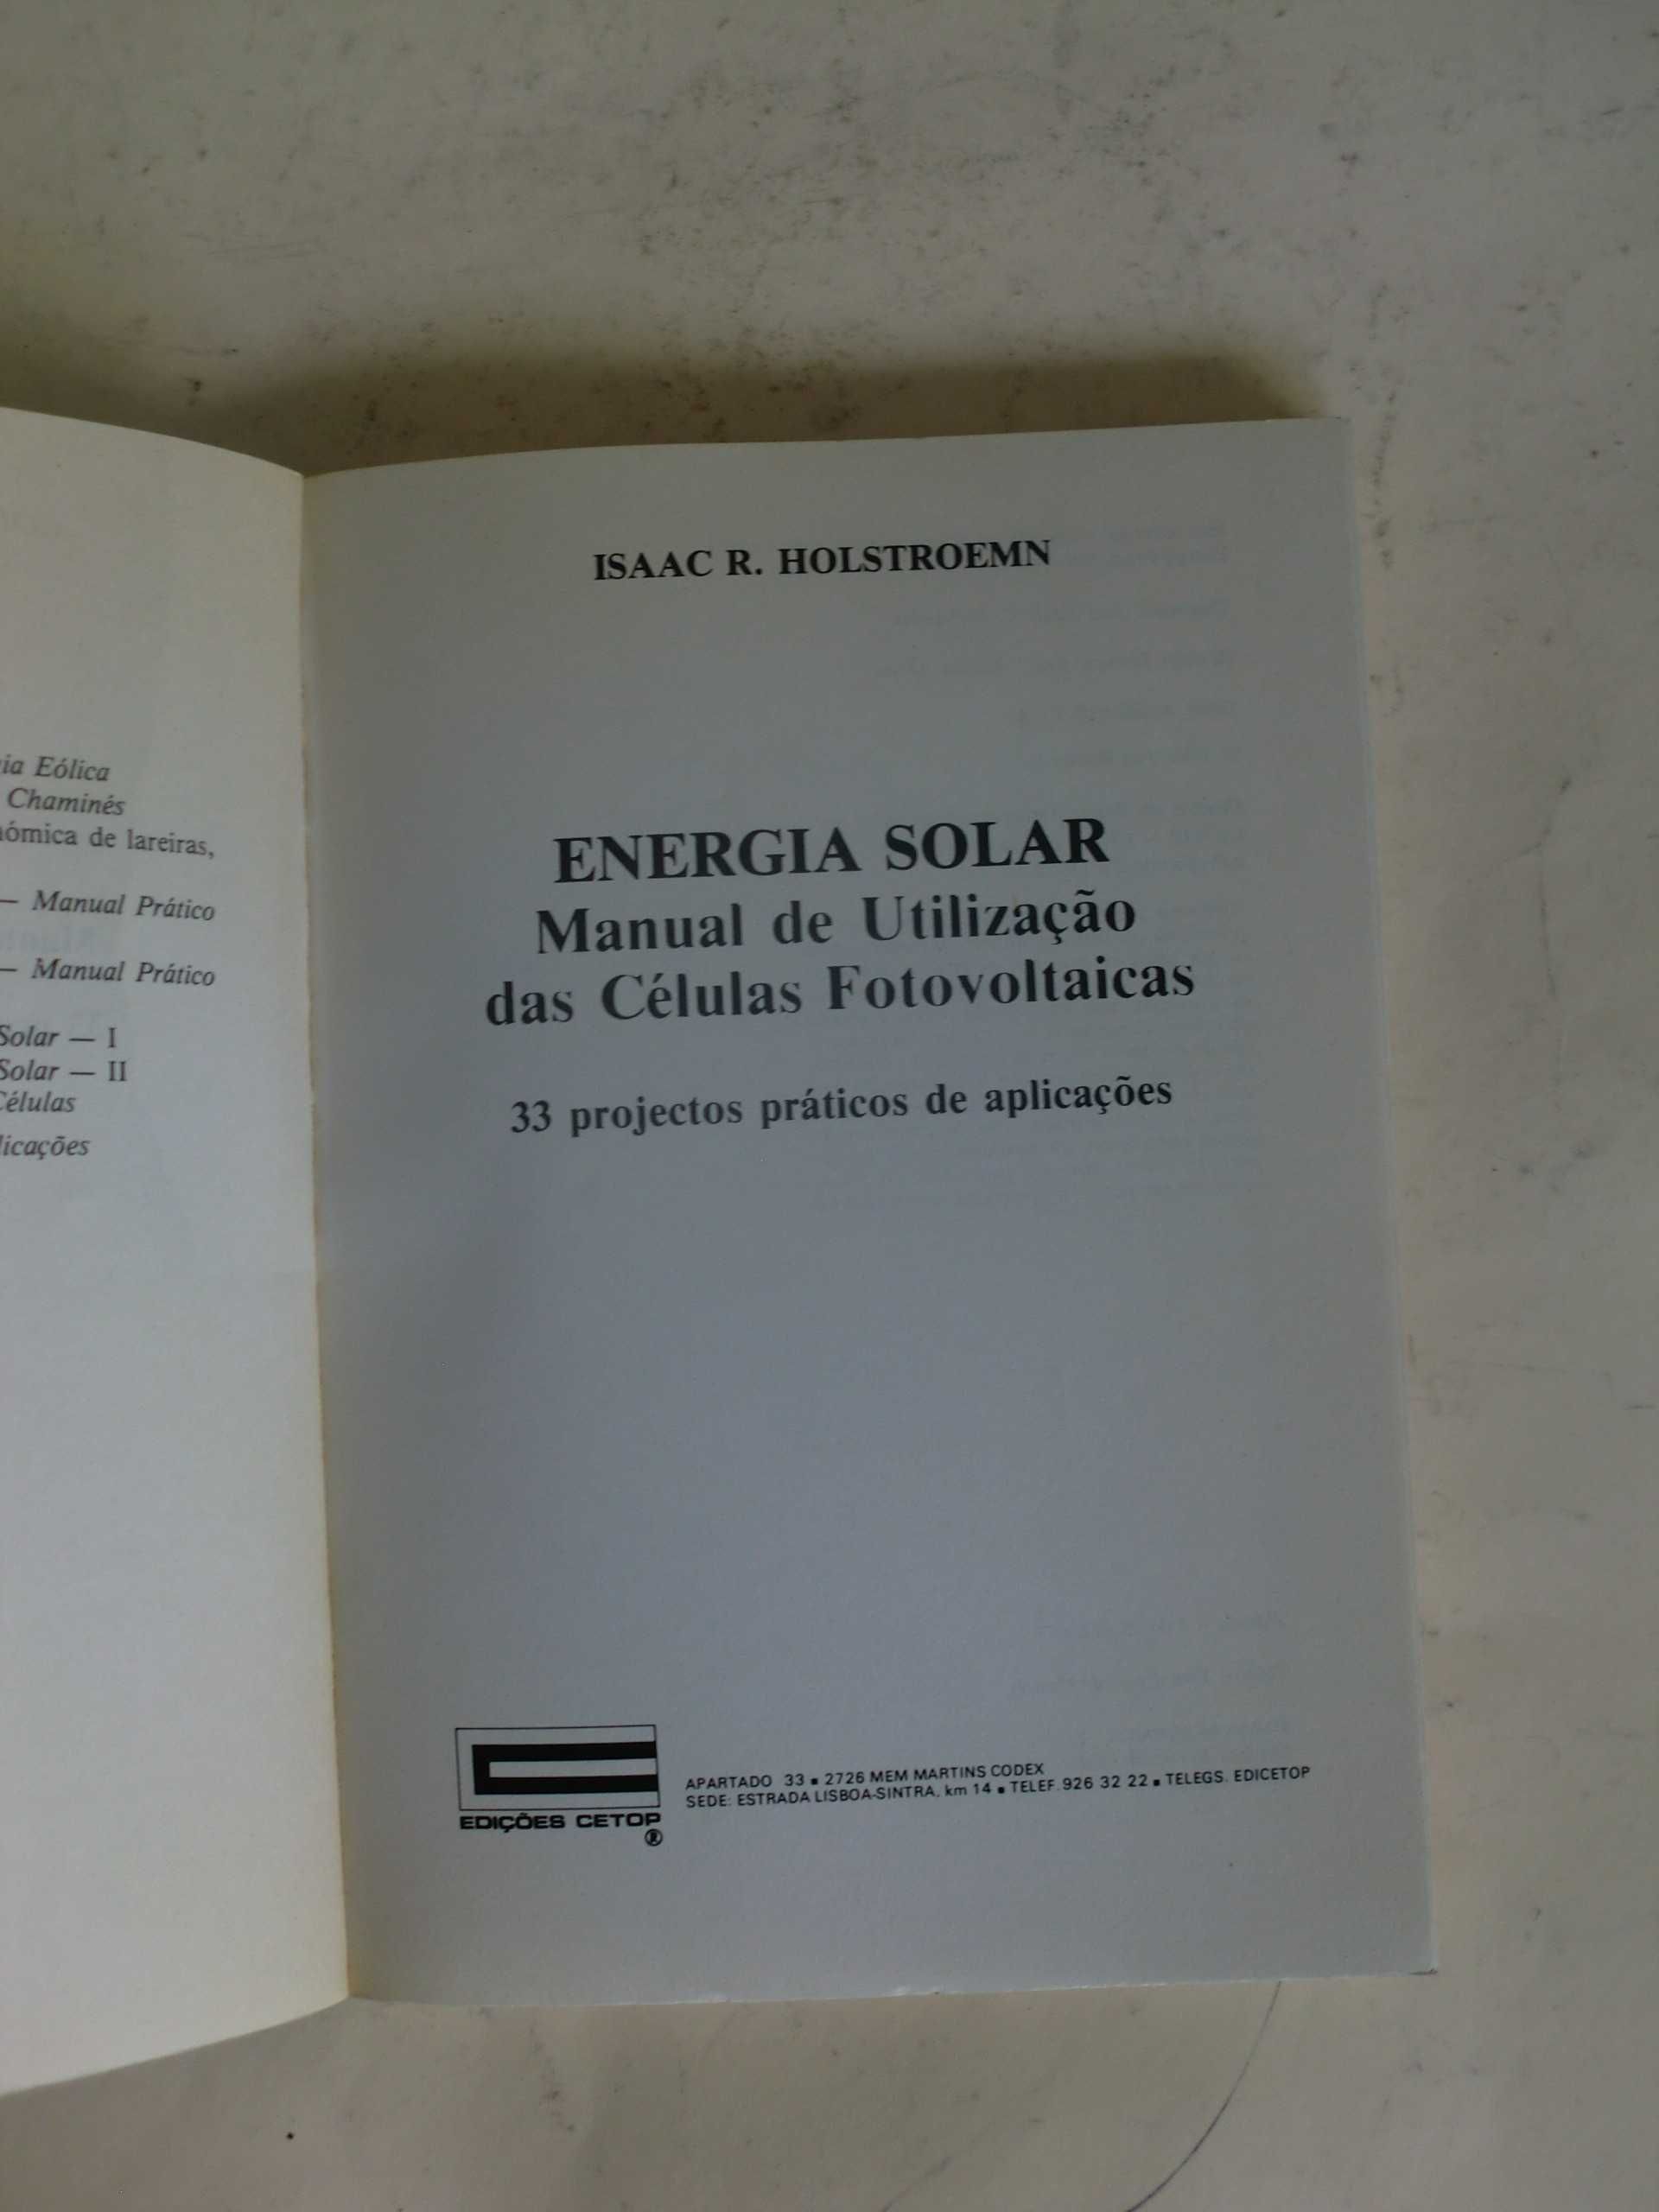 Manual de Utilização das Células Fotovoltaicas
de Isaac R. Holstroemn